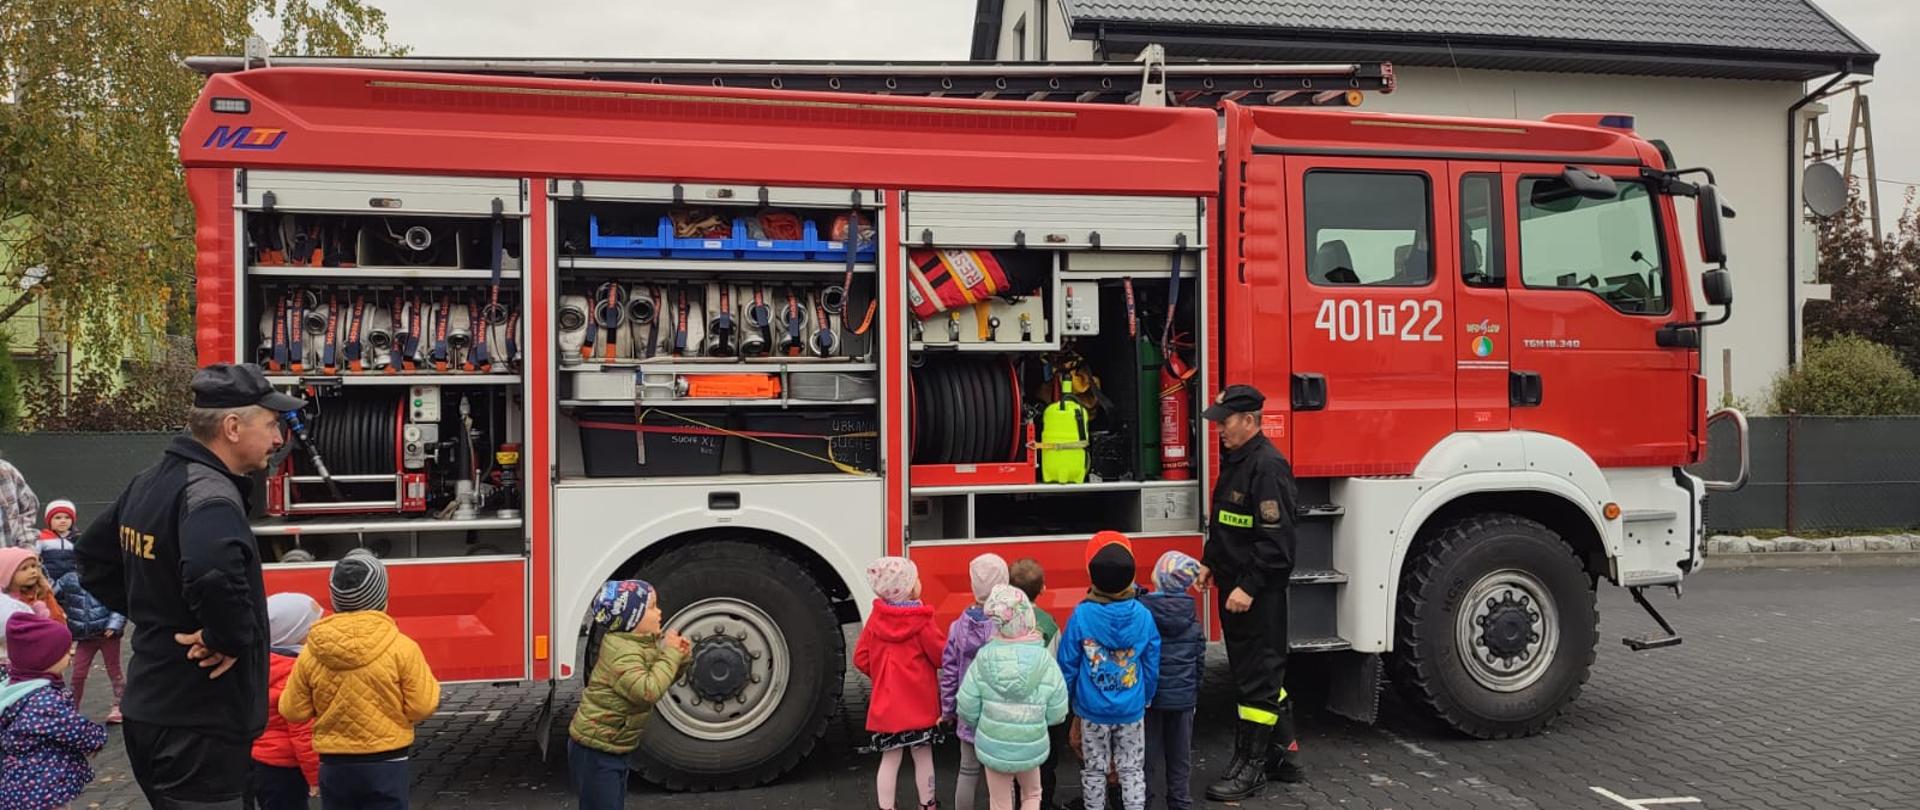 Na 1 planie przedszkolaki i 1 strażak, przed dziećmi stoi strażak oraz samochód strażacki z otwartymi skrytkami. 